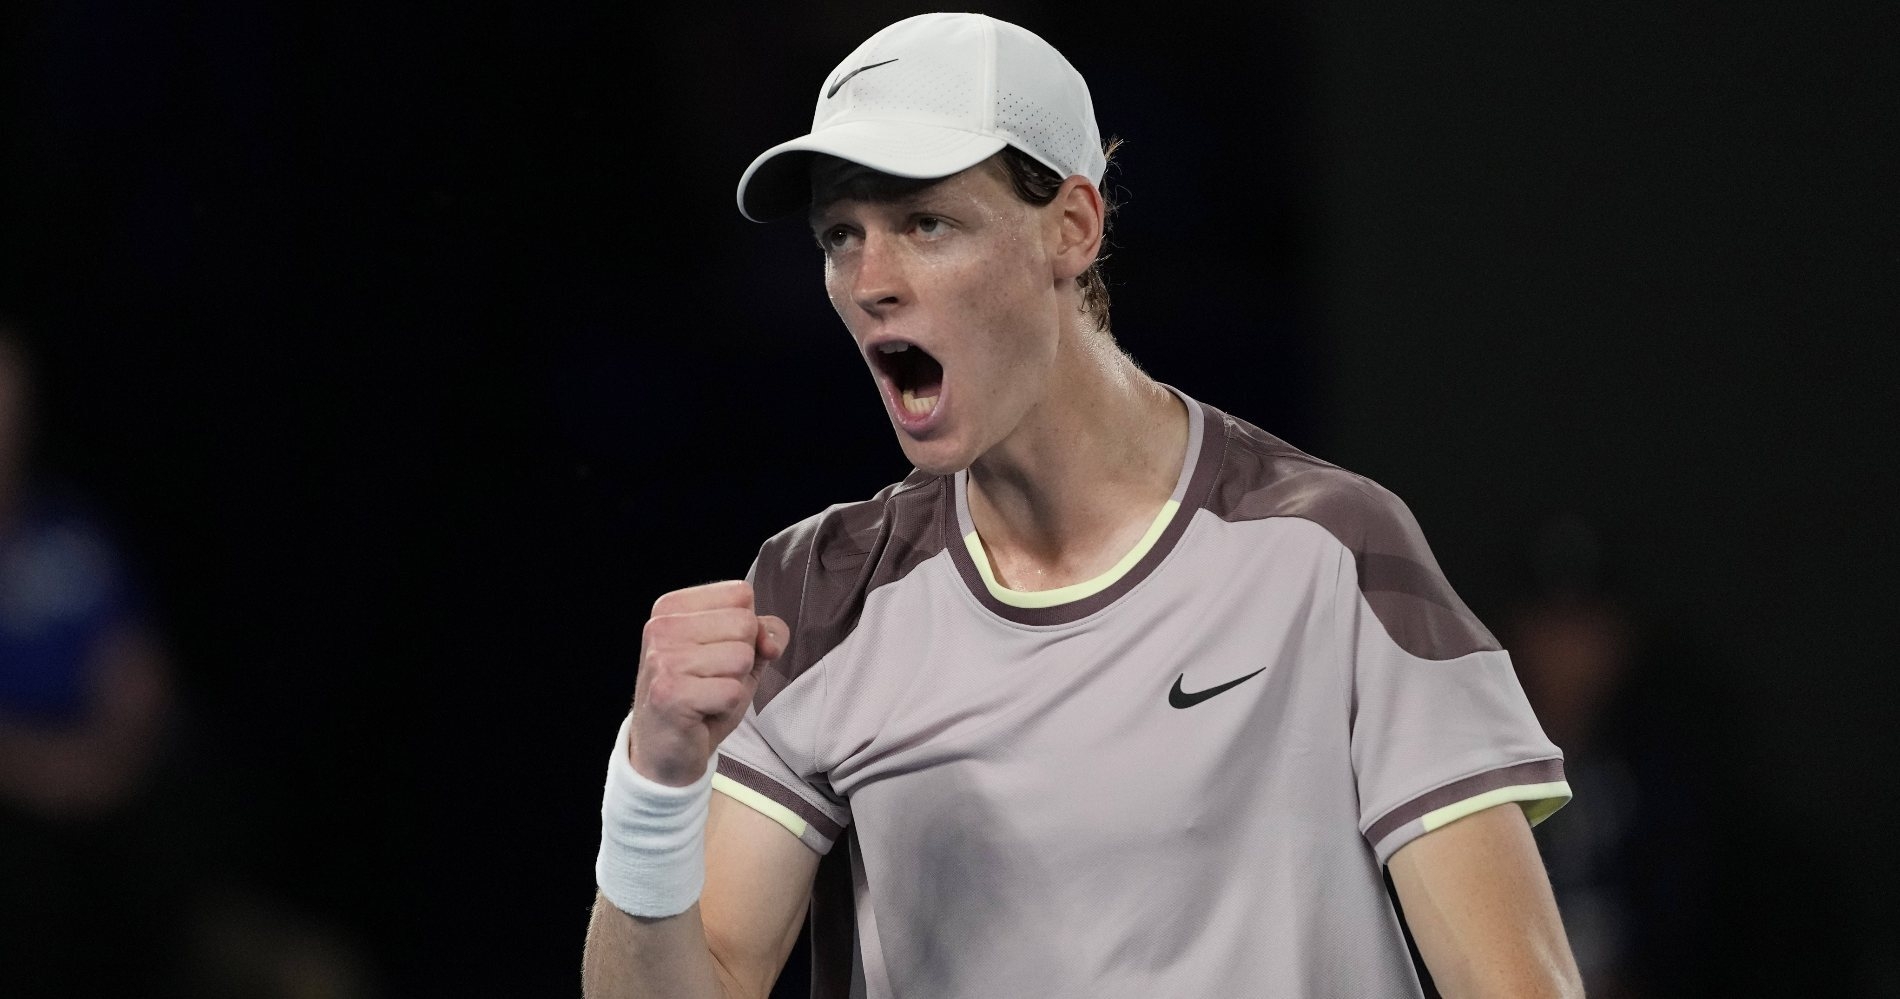 Tennis, ATP – Rotterdam Open 2024: Sinner wins the trophy against De Minaur  - Tennis Majors